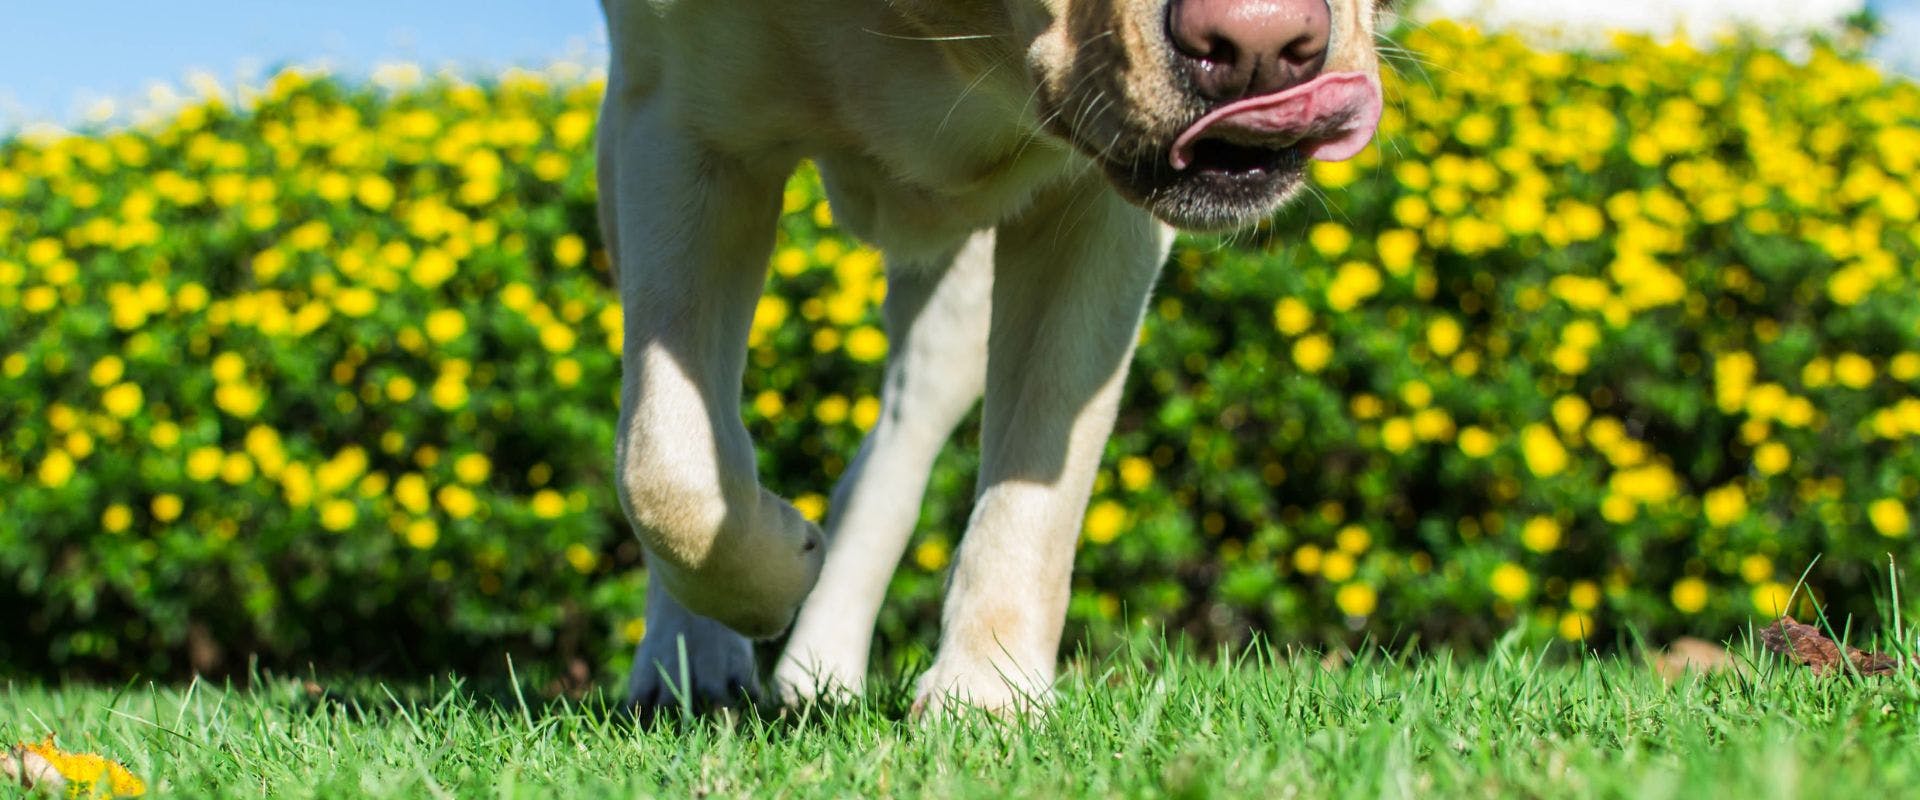 Close-up of Golden Retriever walking on grass